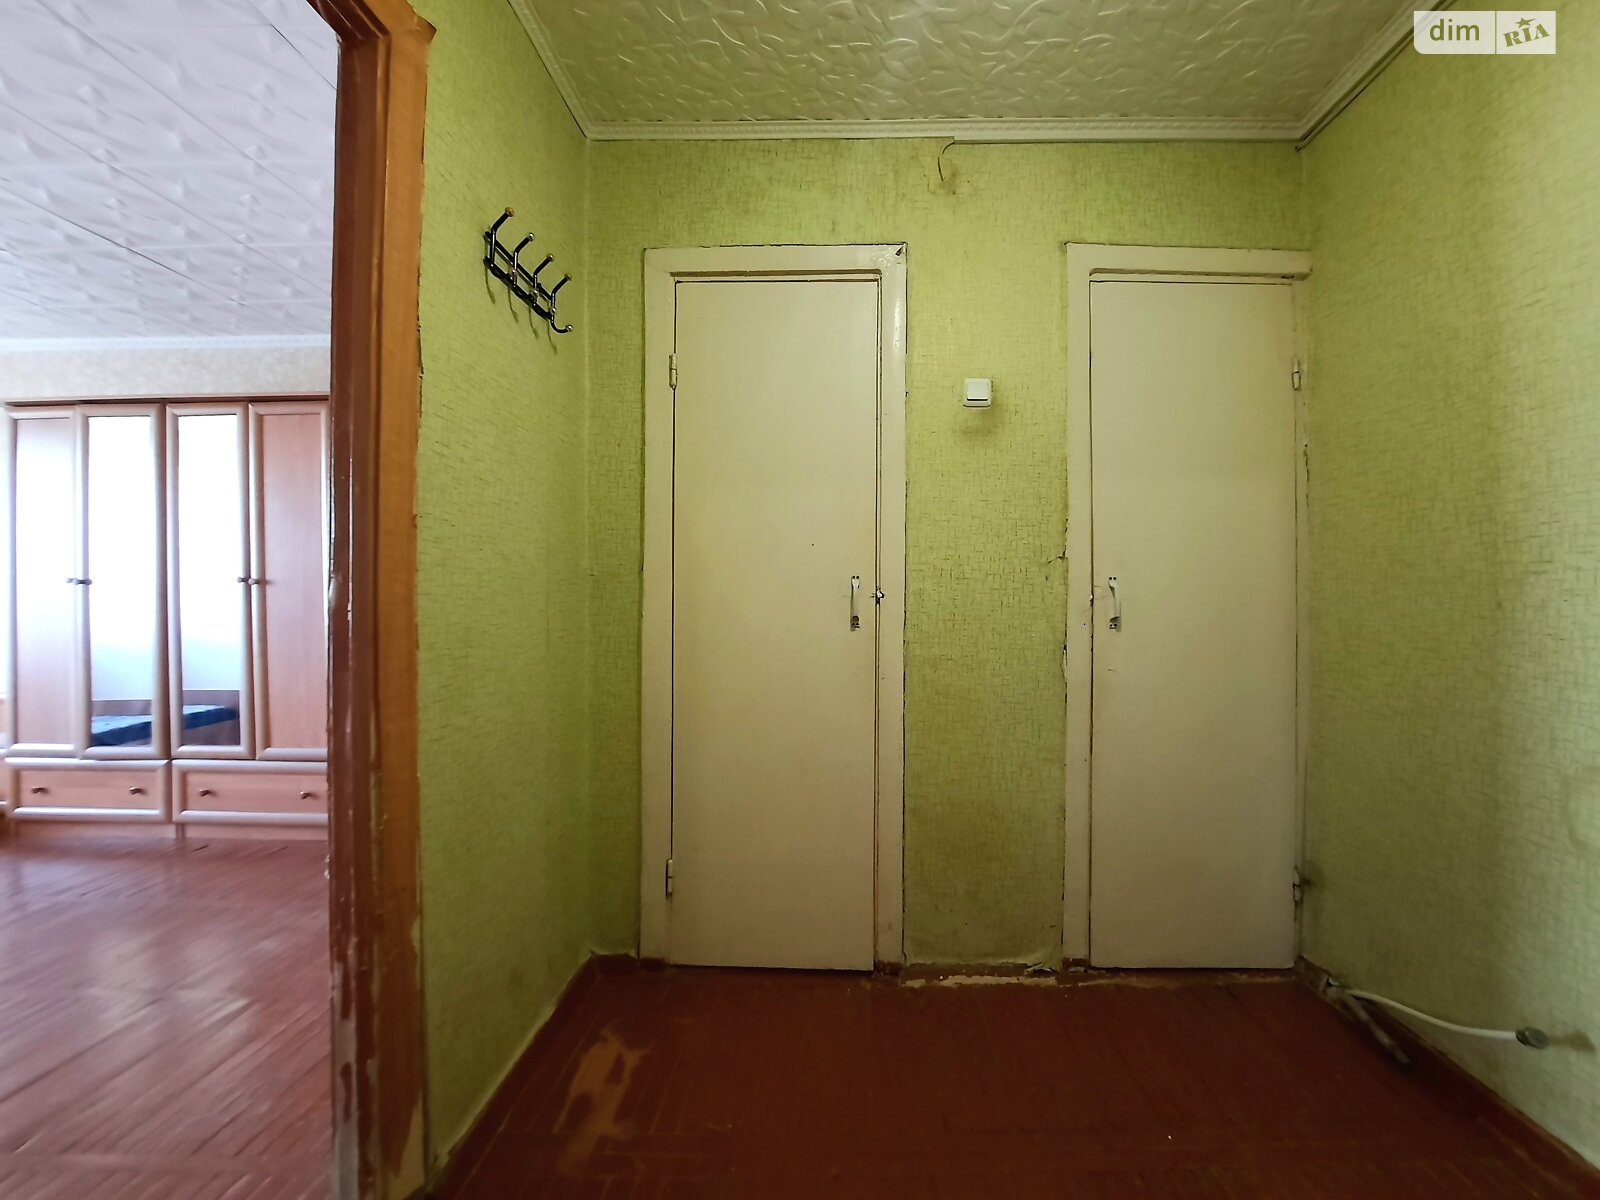 Комната в Кременчуге, на просп. Леси Украинки 76 в районе Молодежное на продажу фото 1